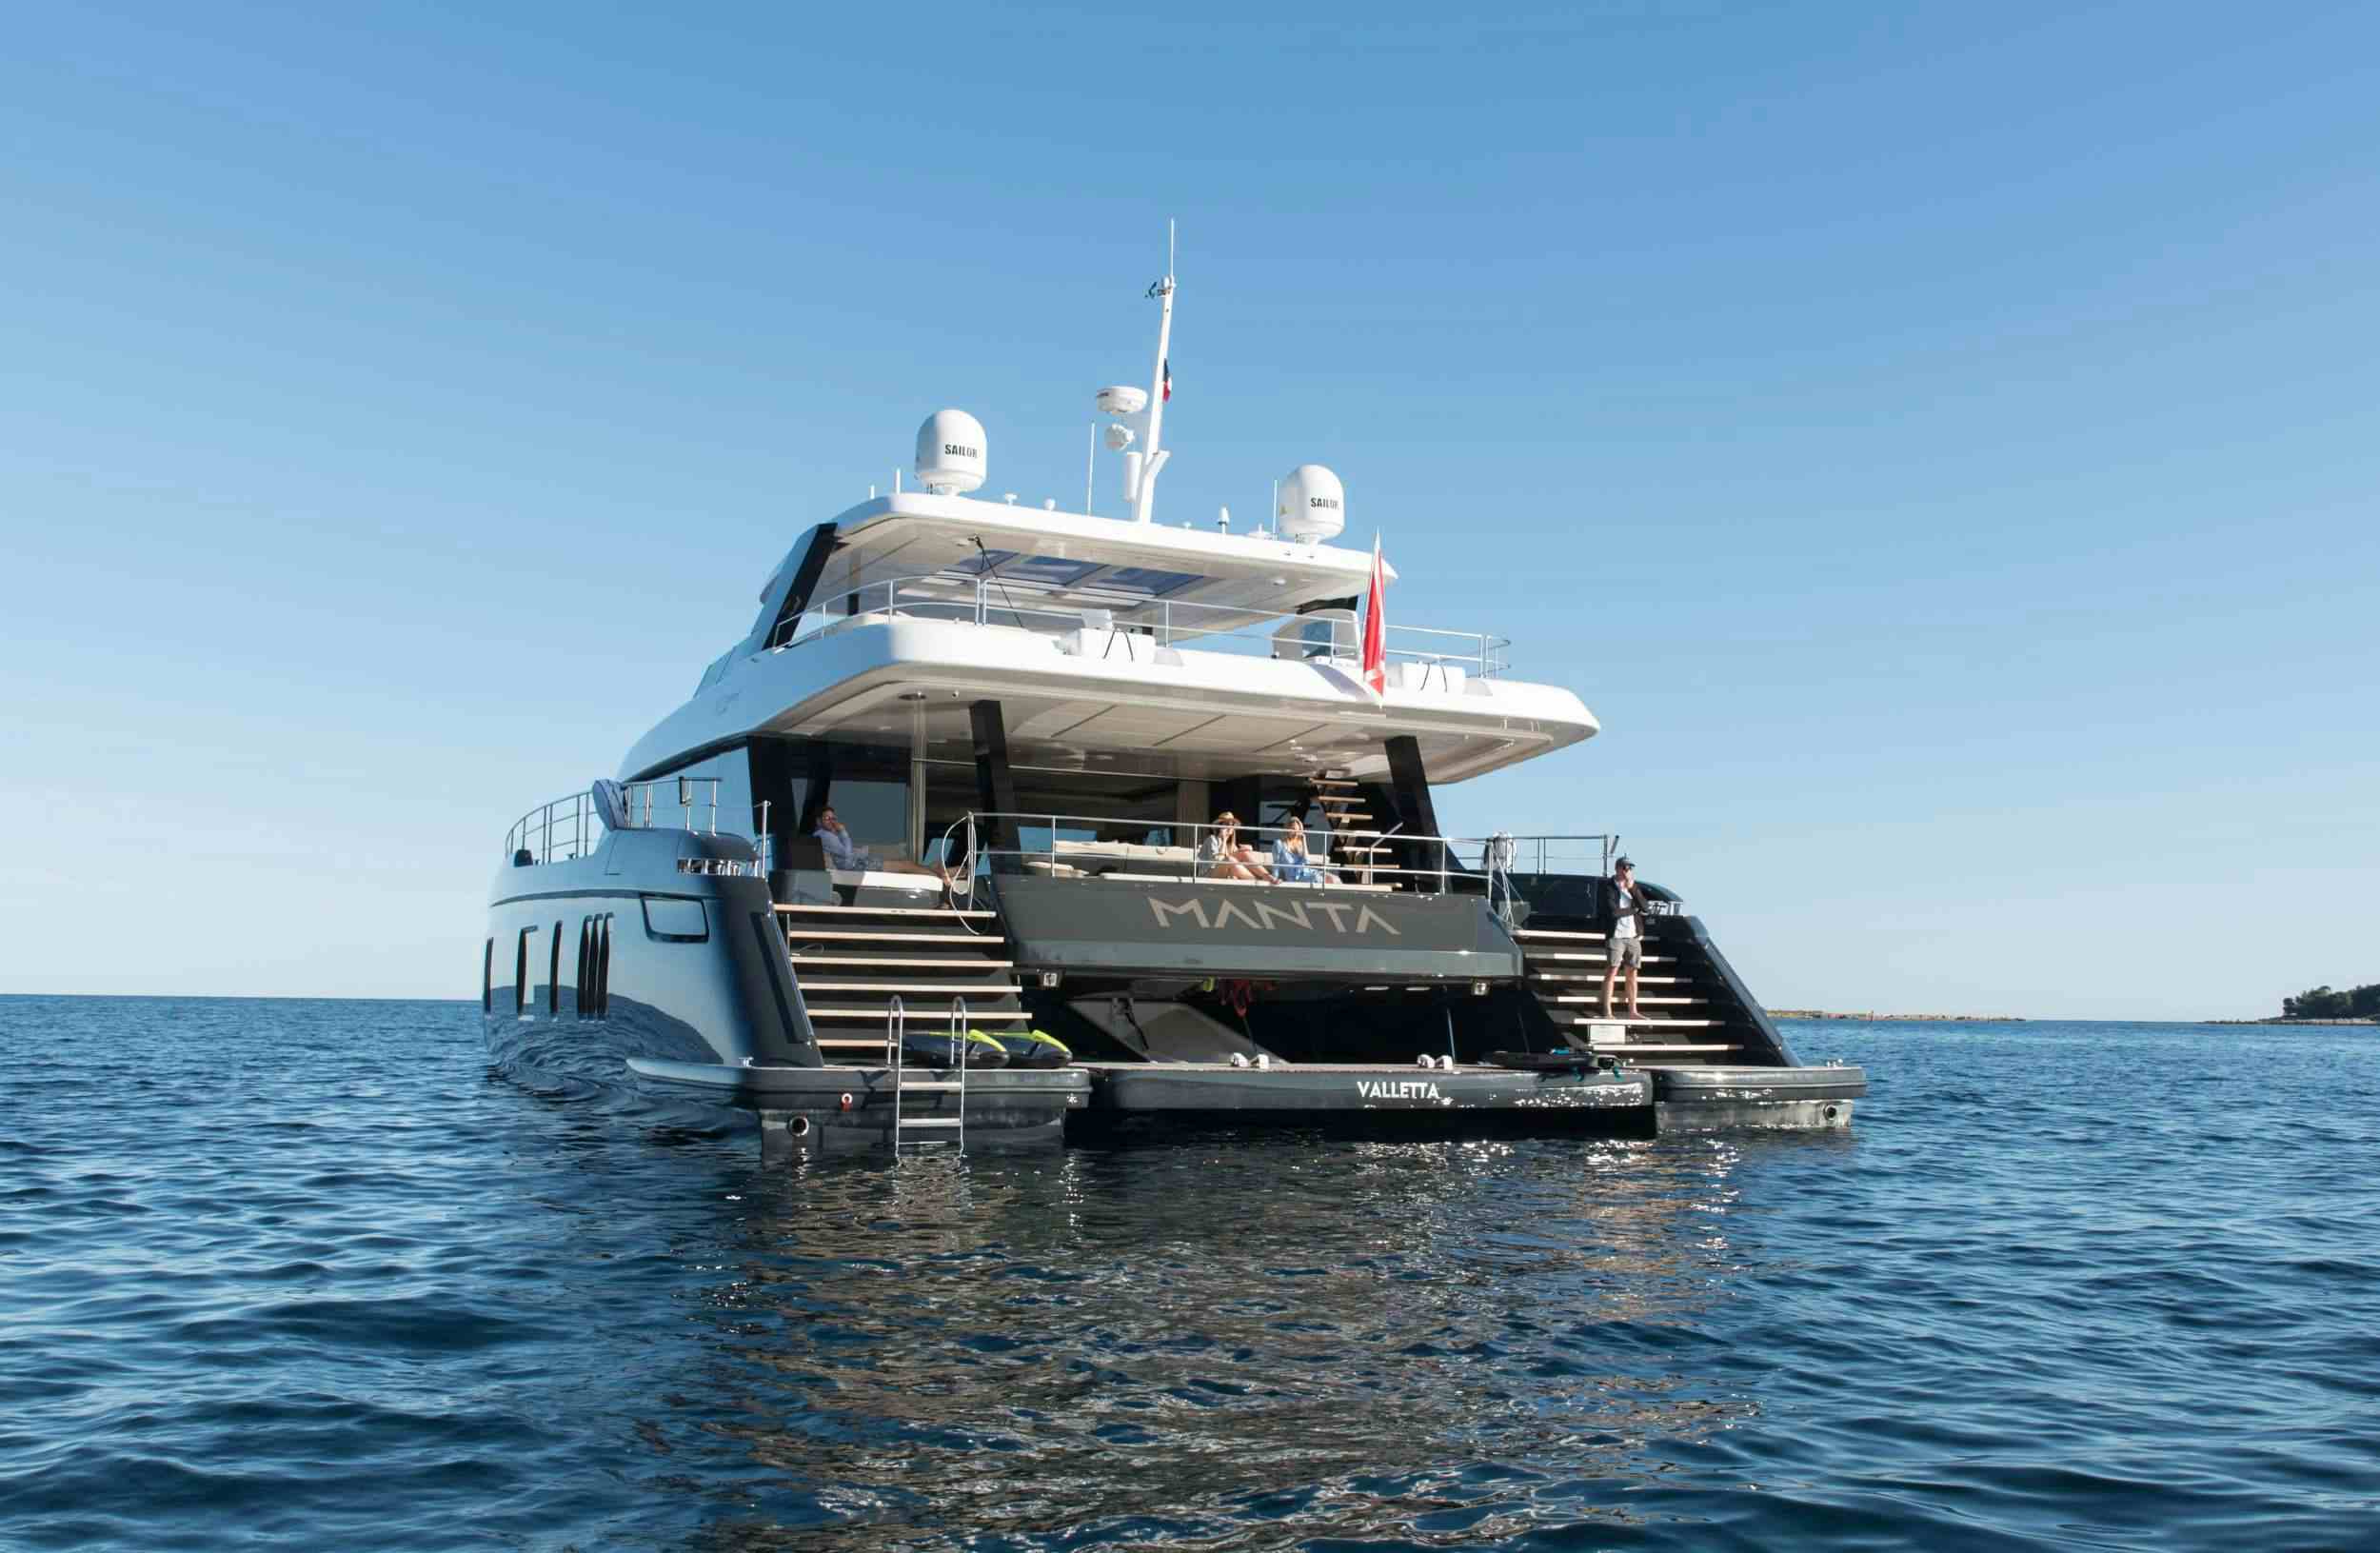 MANTA - Yacht Charter Tropea & Boat hire in Riviera, Cors, Sard, Italy, Spain, Turkey, Croatia, Greece 1